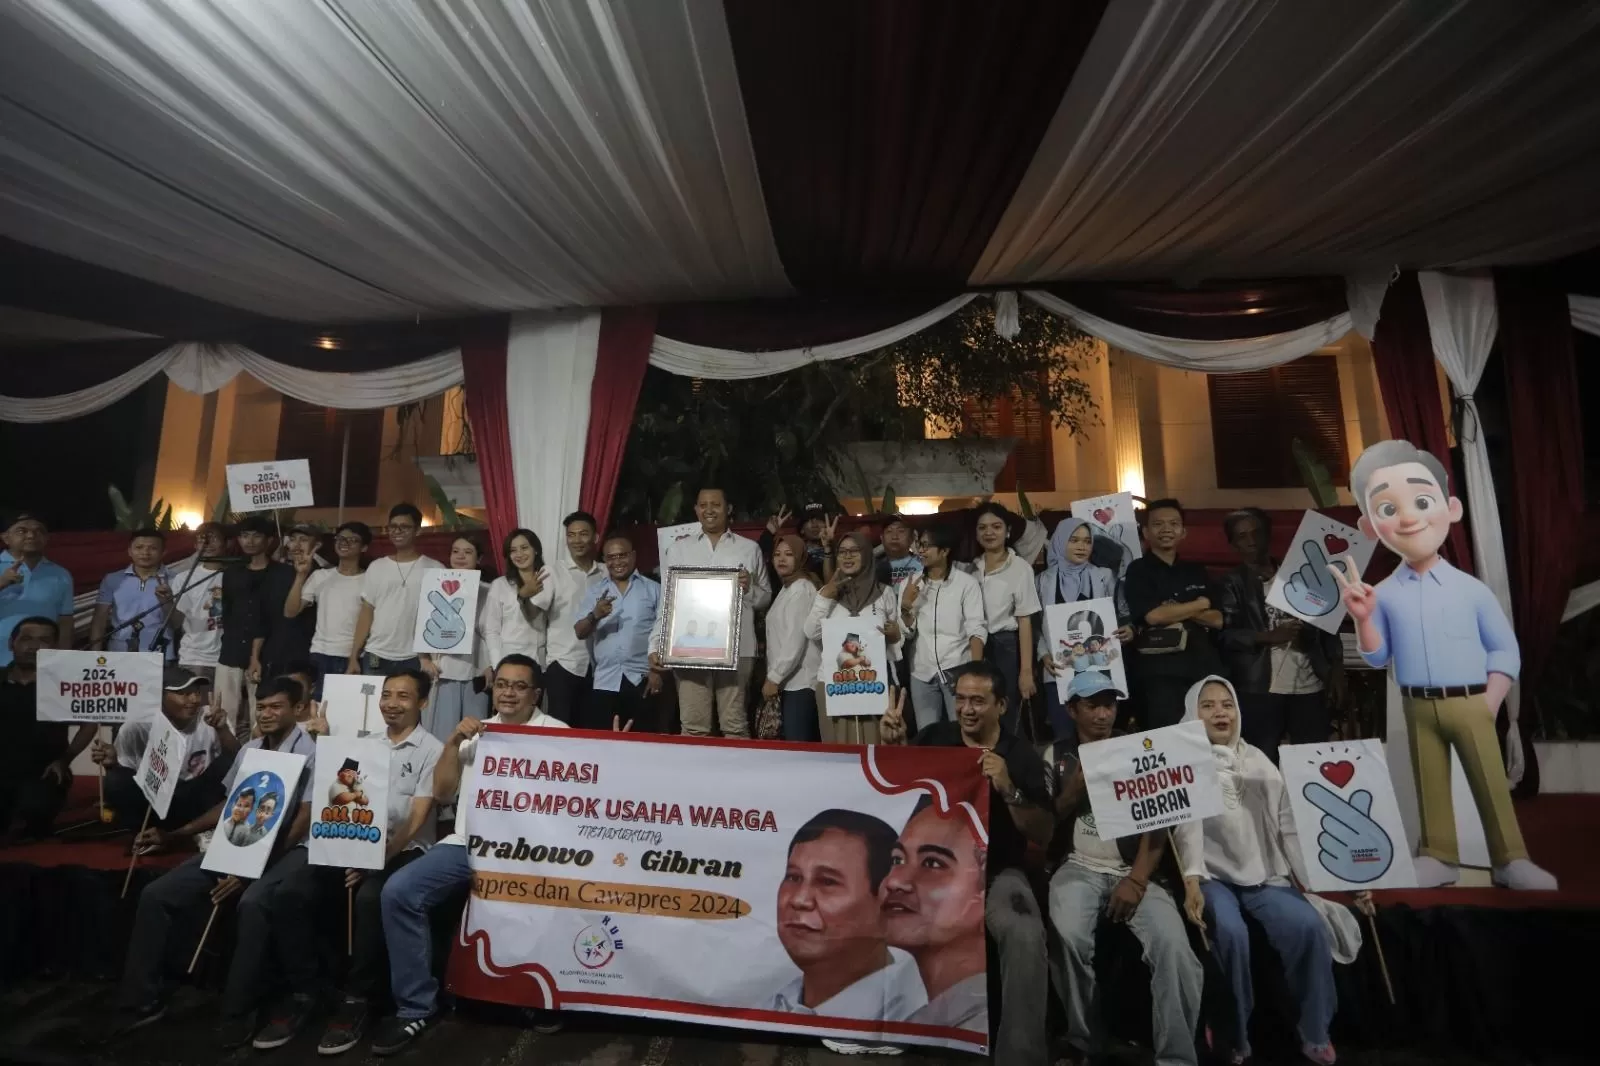 Melangkah Bersama: Dukungan Kelompok Usaha Warga Keberlanjutan Program UMKM di Era Prabowo-Gibran